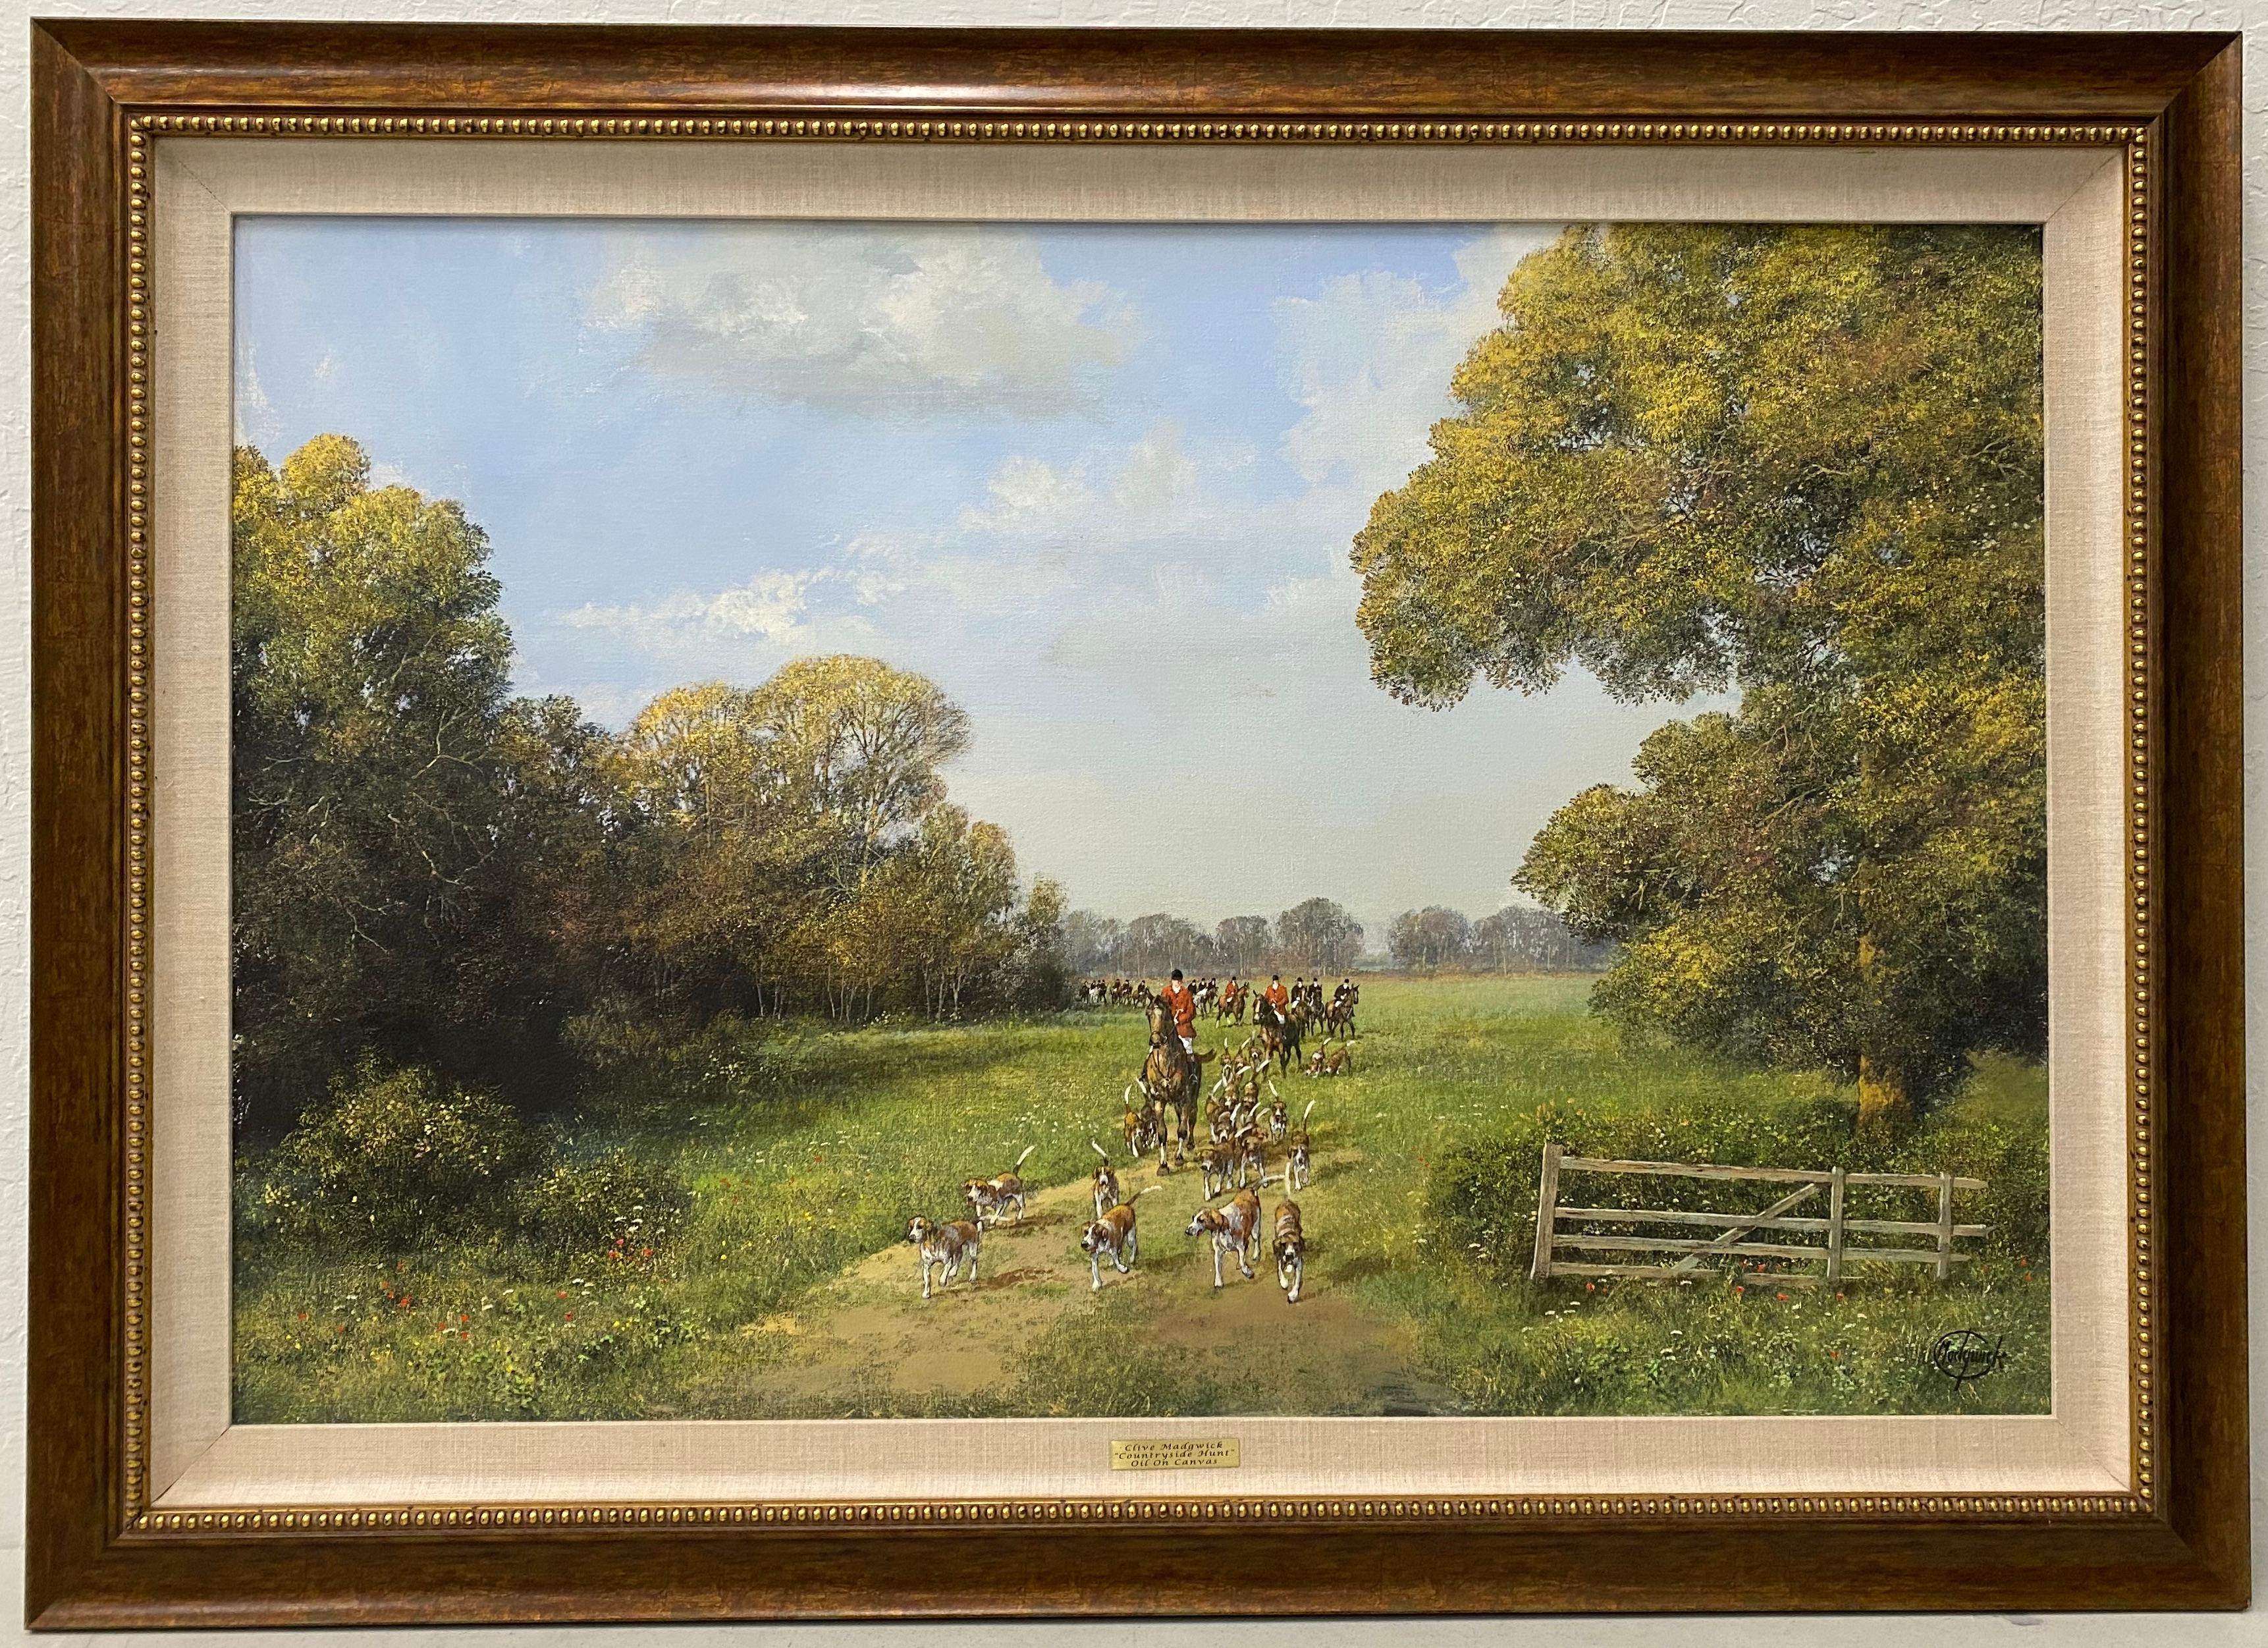 « Countryside Hunt », huile sur toile originale de Clive Madgwick, vers 1980

Une chasse dans la campagne anglaise 

Huile originale sur toile

Dimensions 36" de large x 24" de haut

Dimensions du cadre : 42,5" de large x 30,5" de haut

Signé par